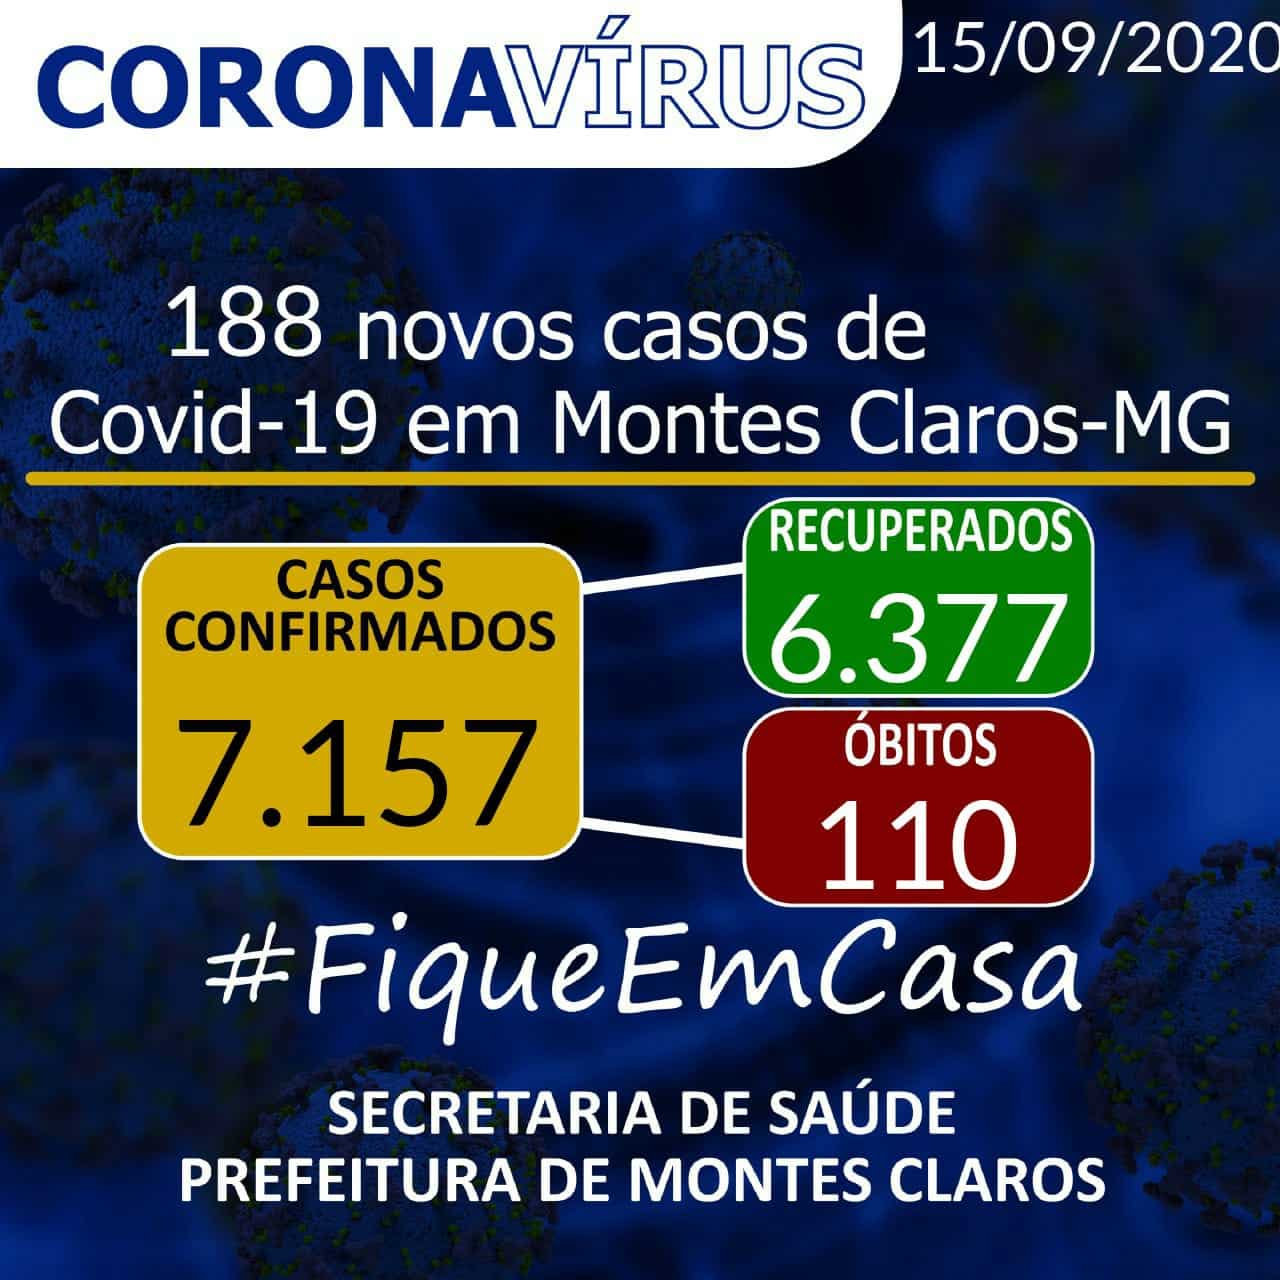 Montes Claros - A cidade de Montes Claros tem 188 novos casos do novo Coronavírus, e óbitos sobem para 110